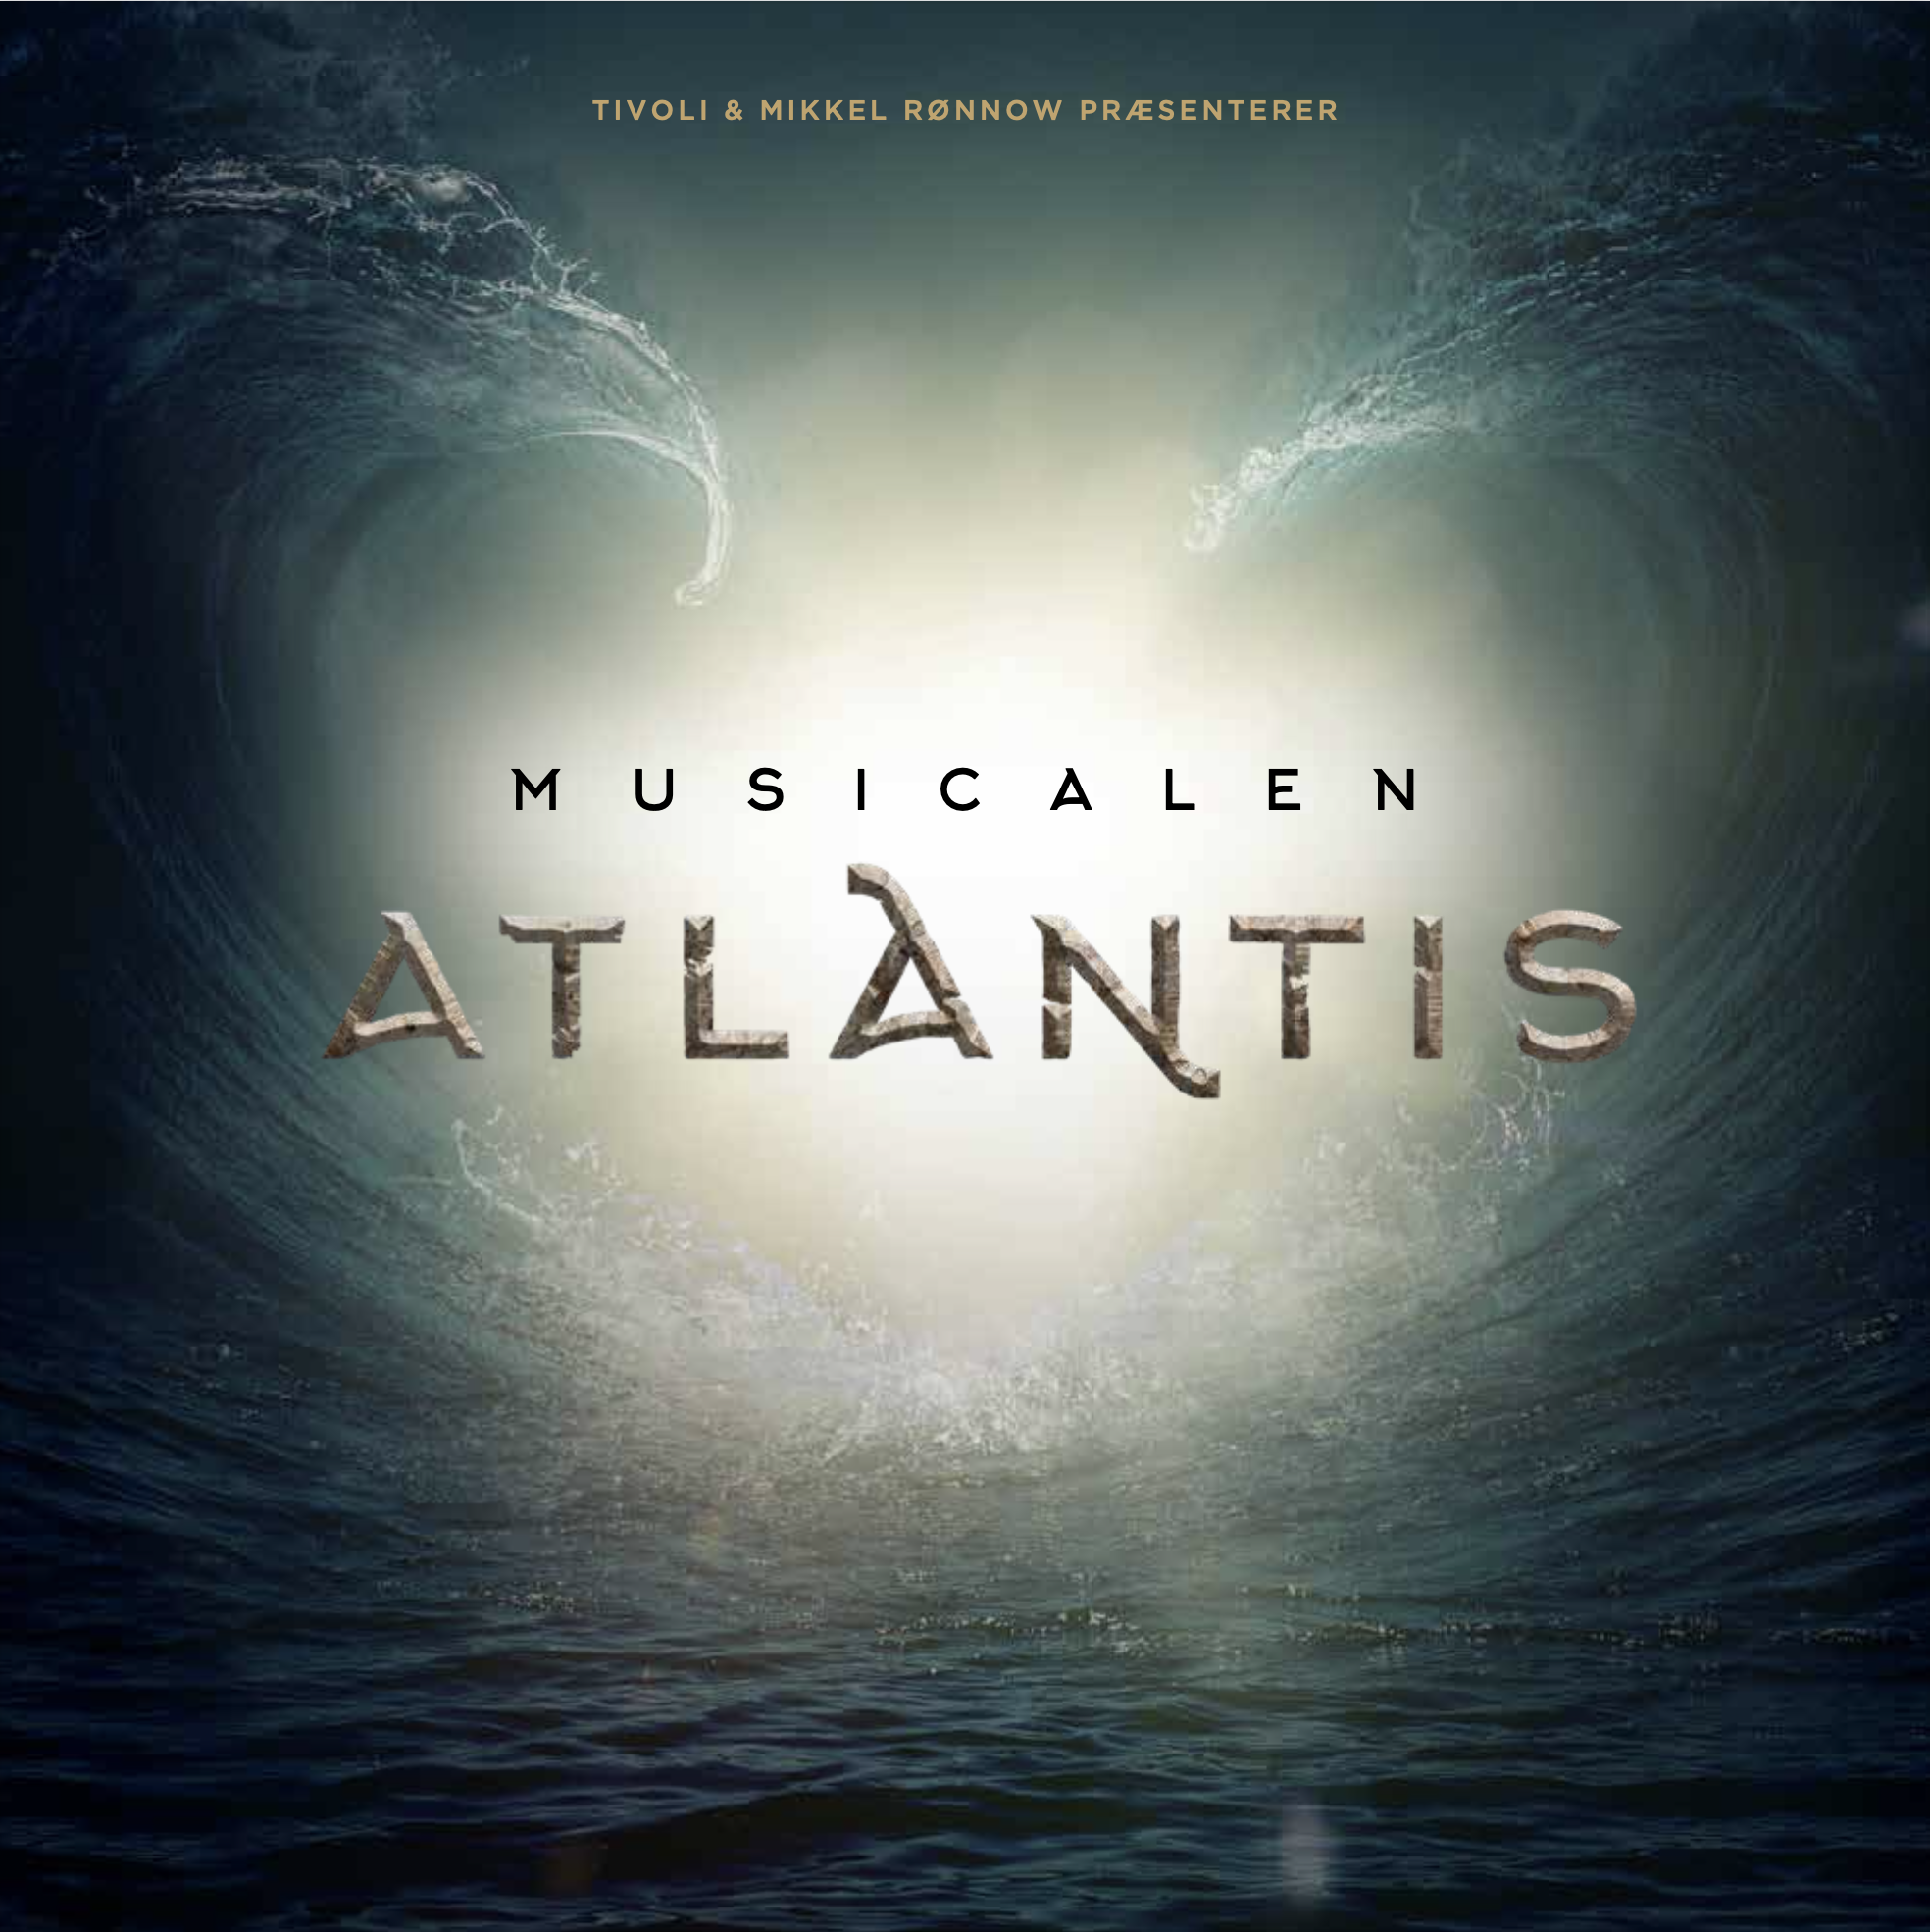 Atlantis Souvenir Programme